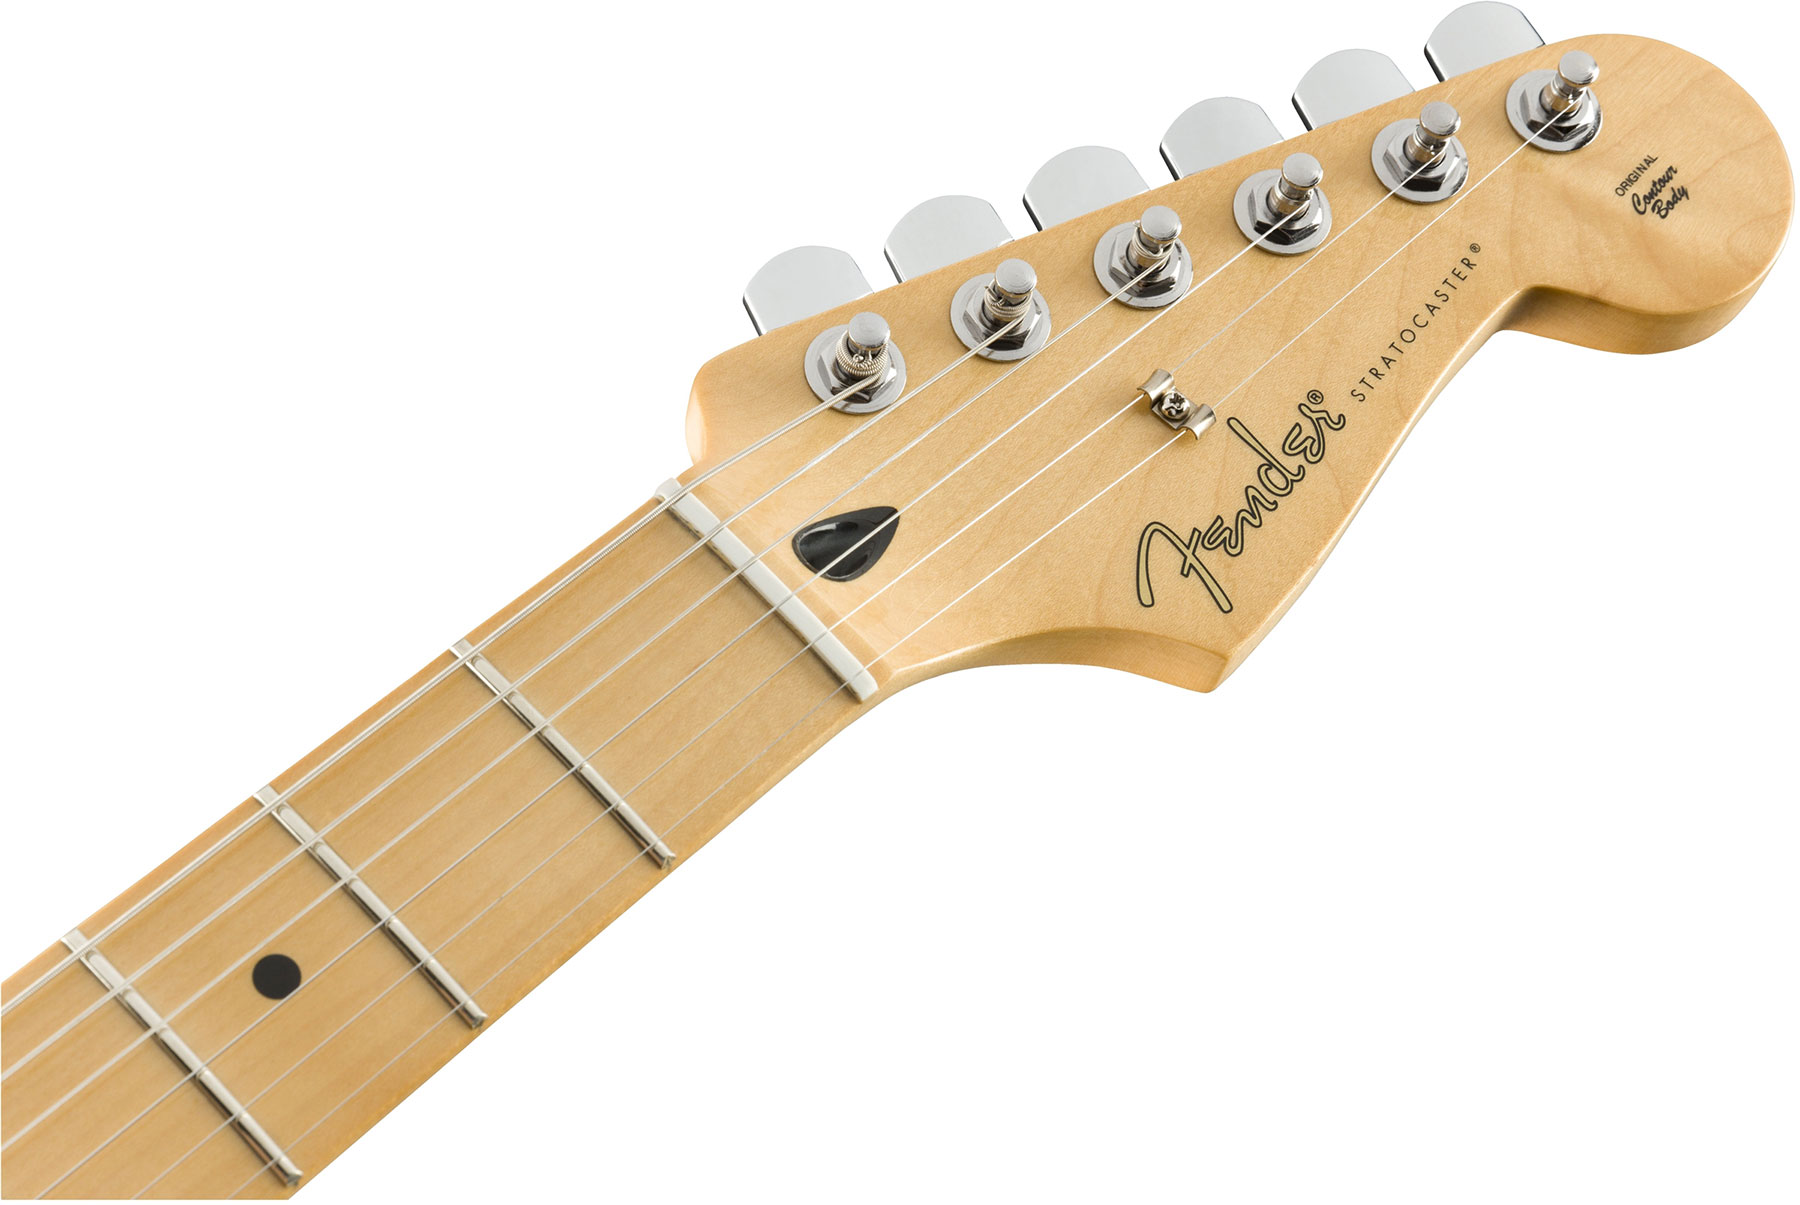 Fender Strat Player Mex Sss Pf - 3-color Sunburst - Str shape electric guitar - Variation 2